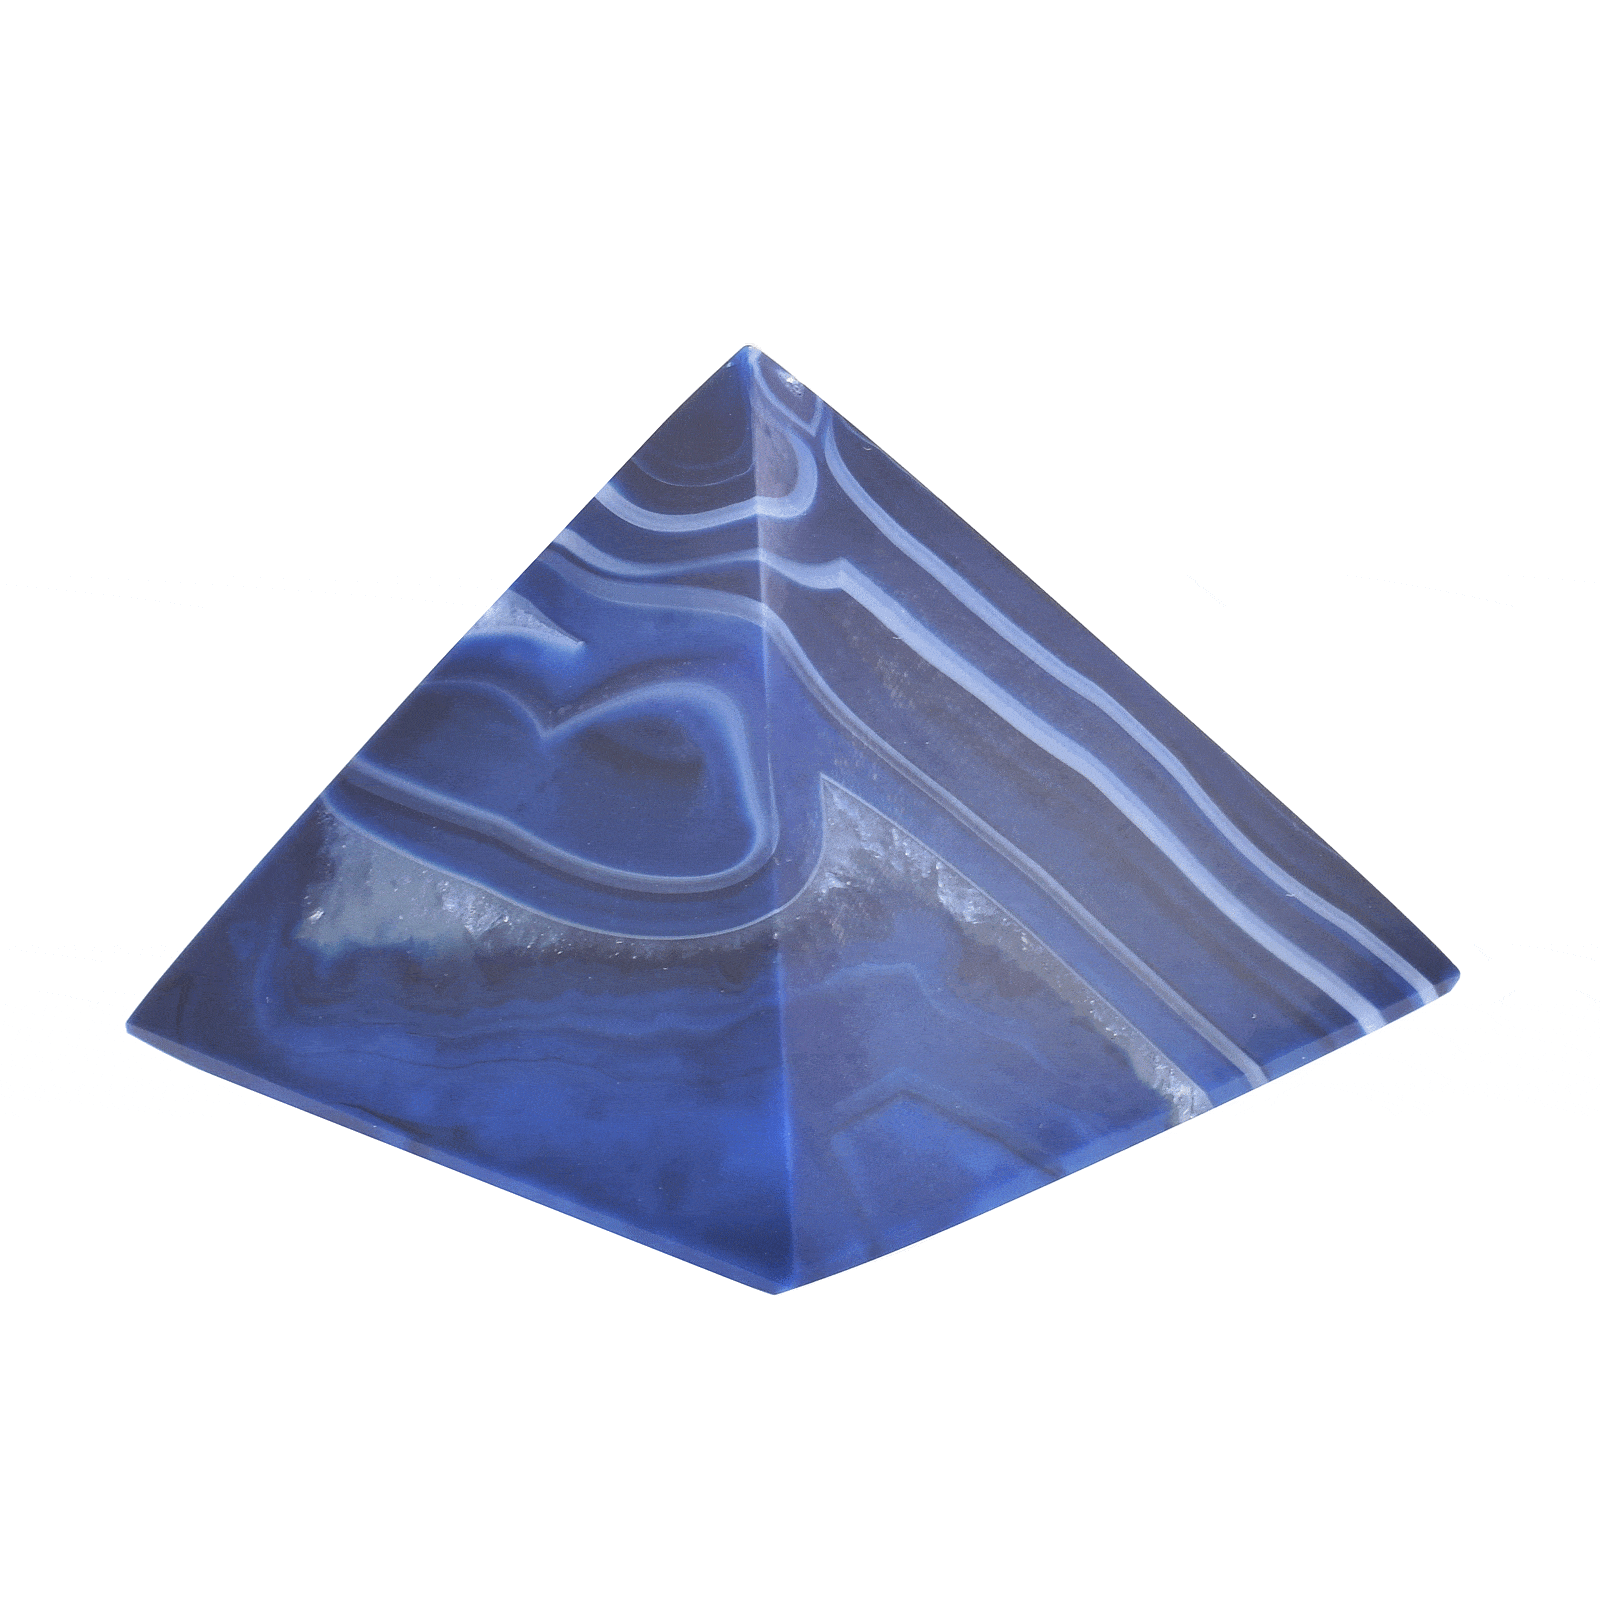 Πυραμίδα από φυσική πέτρα  Αχάτη μπλε χρώματος, ύψους 4cm. Αγοράστε online shop.